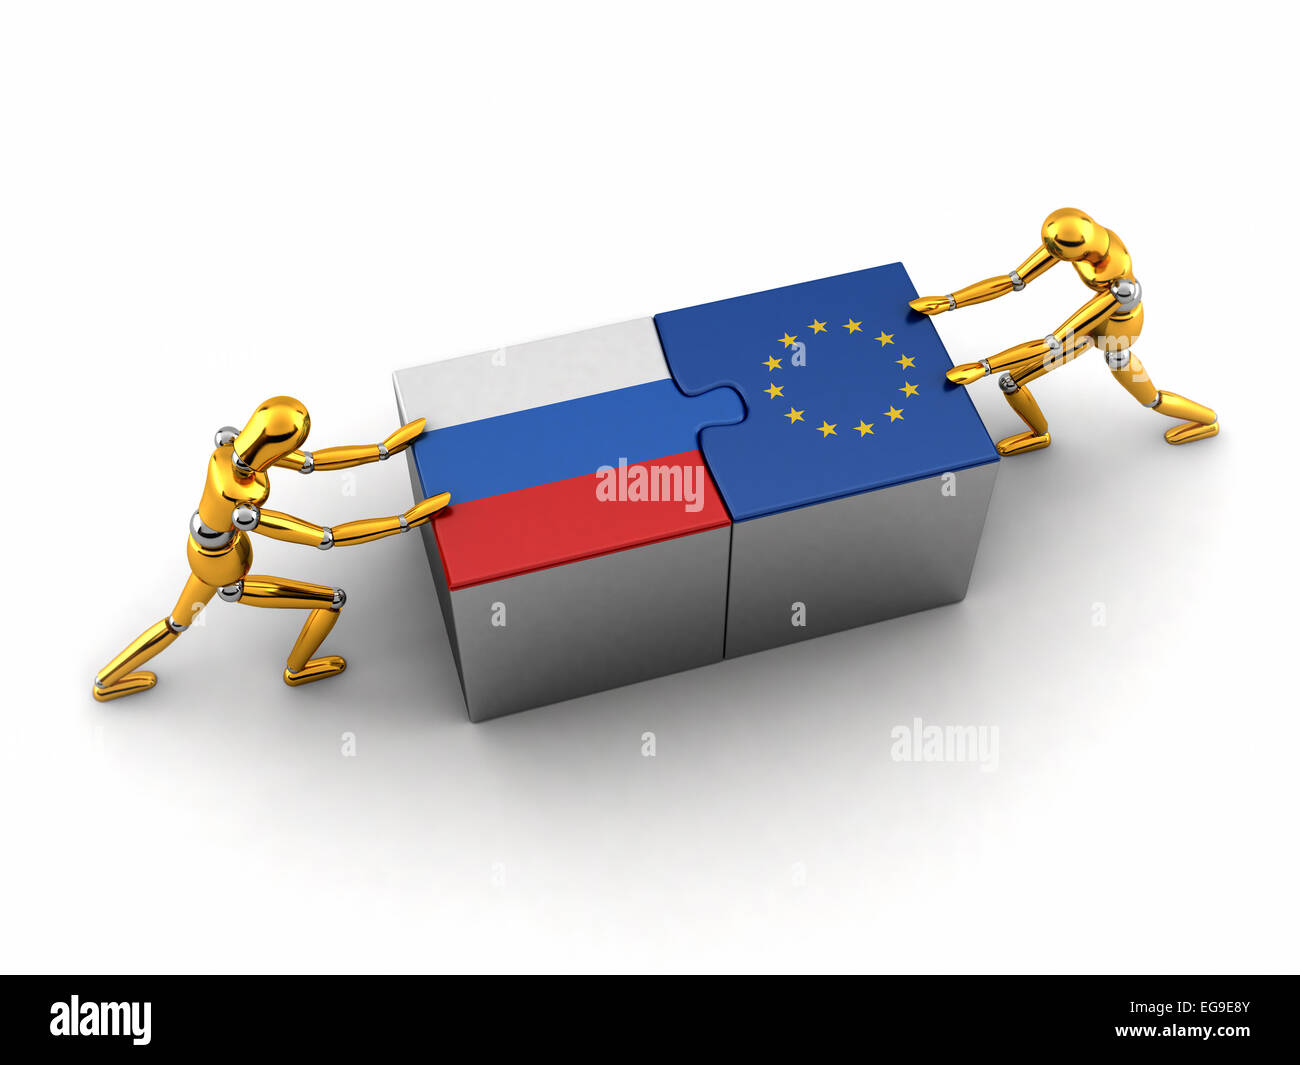 Politische oder finanzielle Konzept von Russland zu kämpfen und eine Lösung mit der Europäischen Union zu finden. Stockfoto